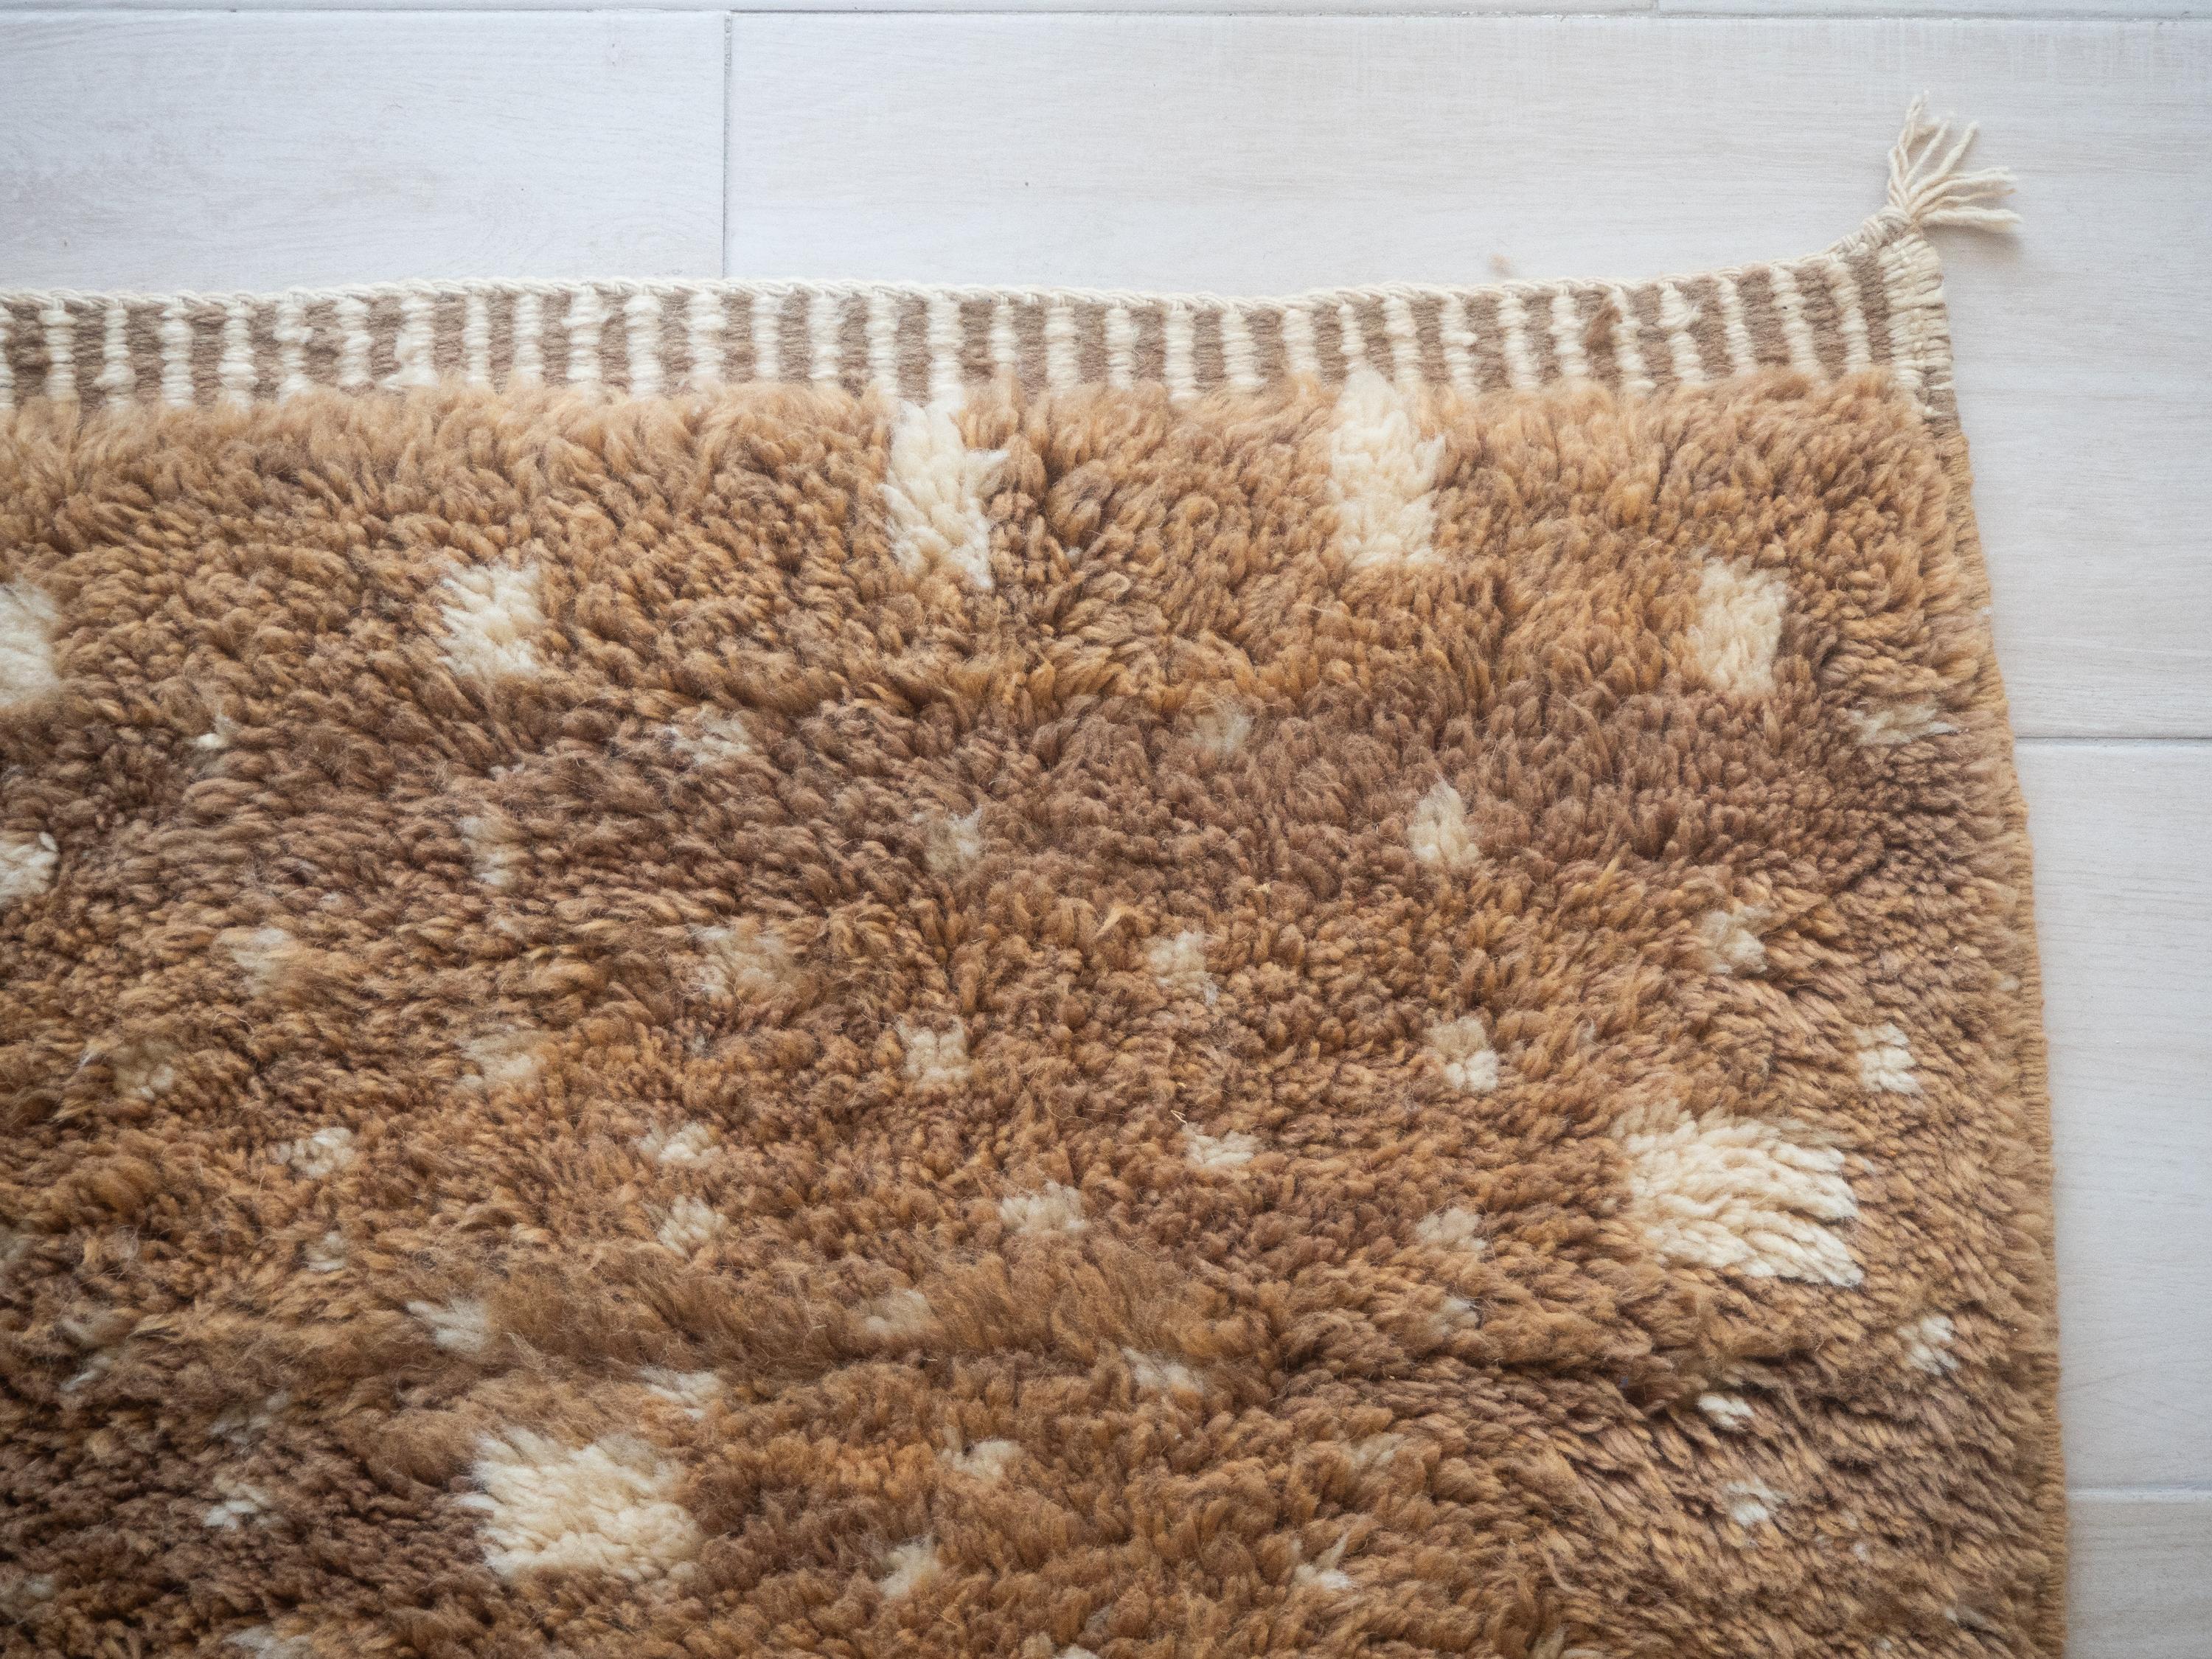 Moroccan Beni Mrirt rug, Tribal Pattern Biege Color Berber rug, Custom-made For Sale 2